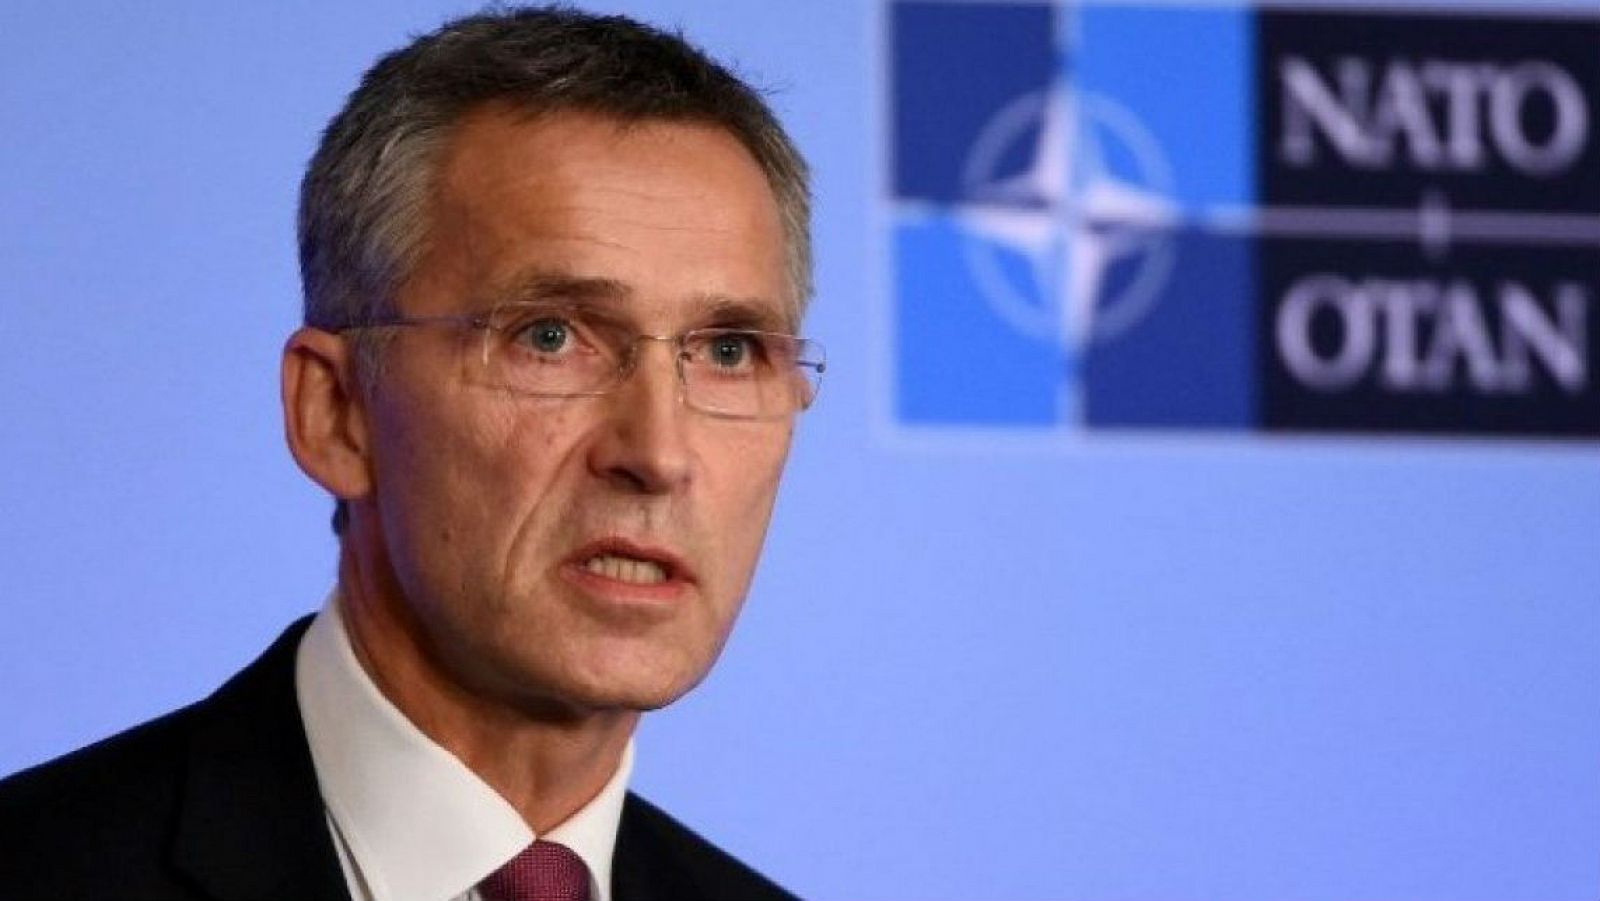 Diario de las 2 - Stoltenberg: "Una OTAN fuerte es bueno para EE.UU. y Europa" - Escuchar ahora